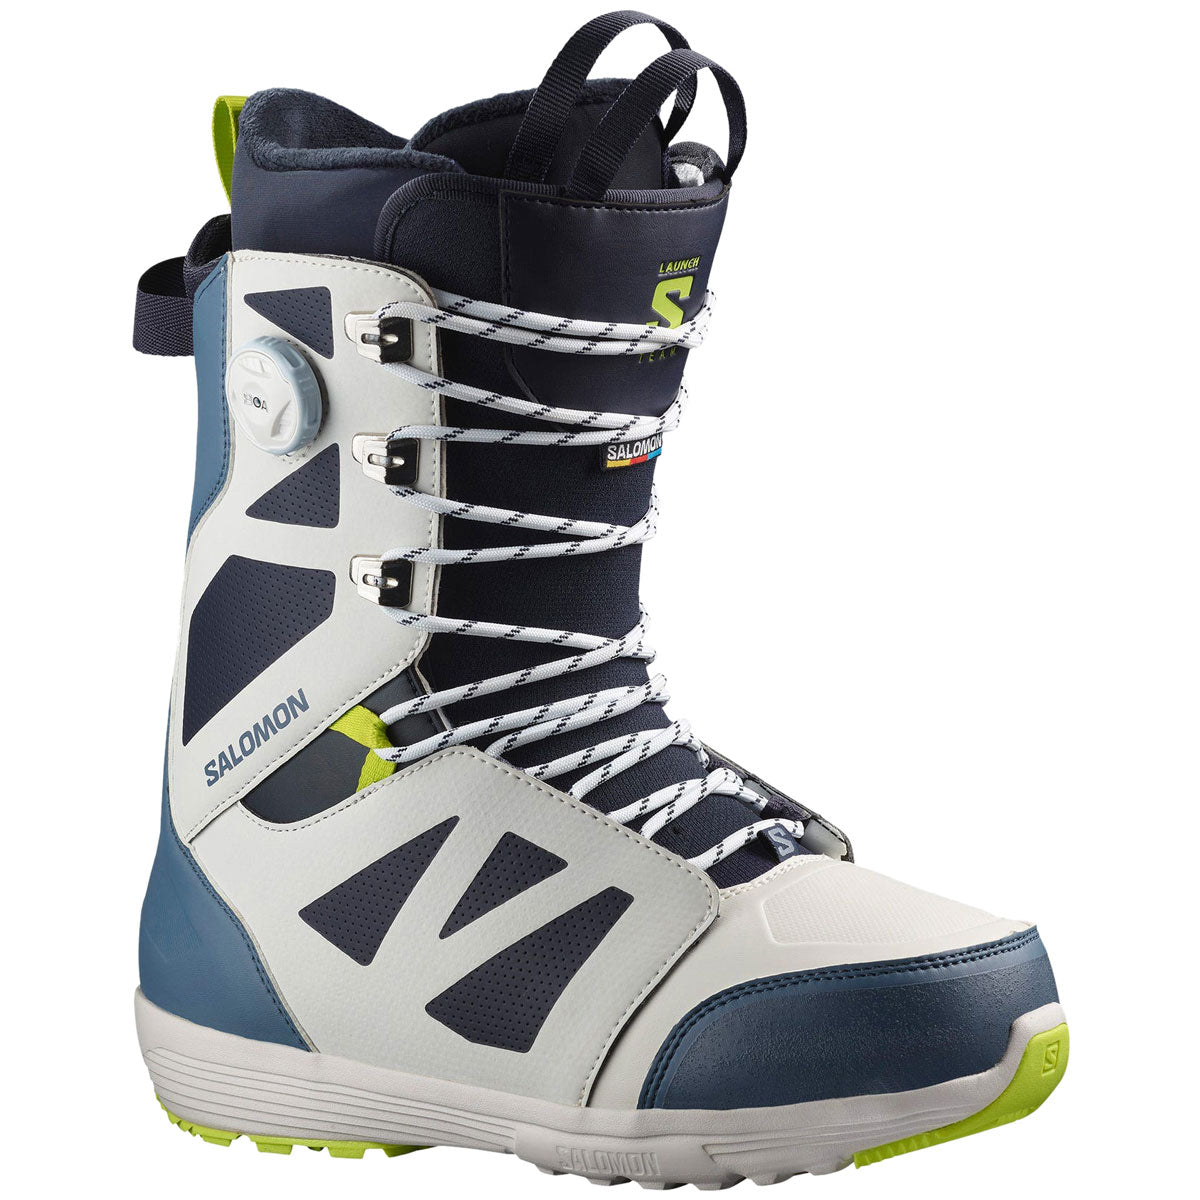 Salomon Launch Lace Sj Boa Snowboard Boots - Team – CCS